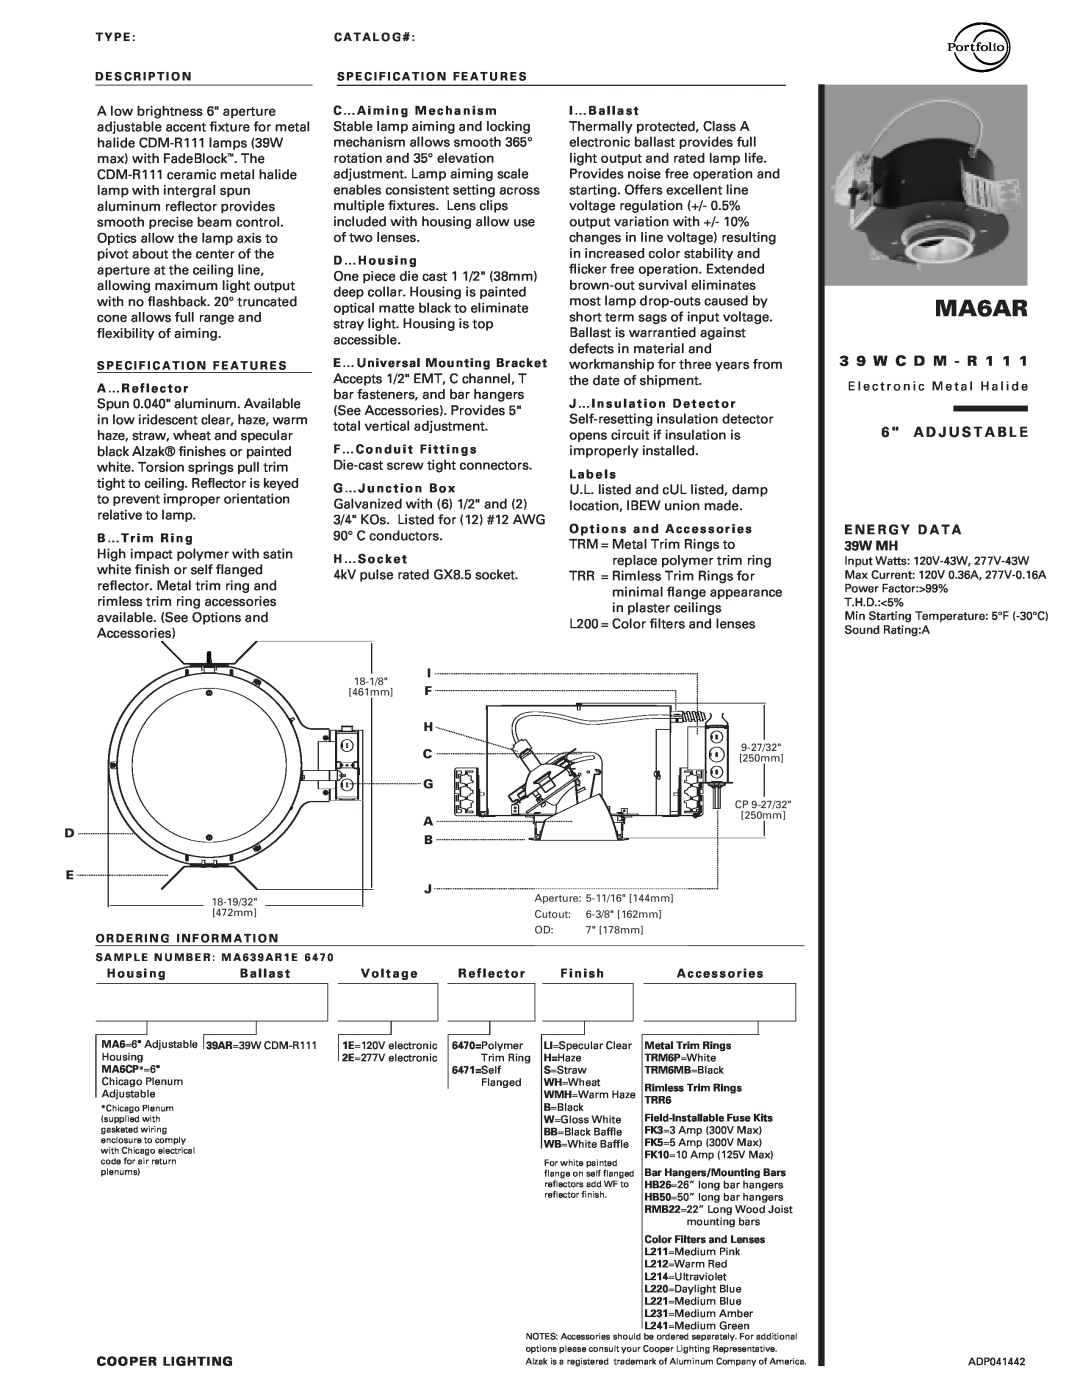 Cooper Lighting MA6AR manual E N E R G Y D A T A 39W MH, 3 9 W C D M - R 1, A D J U S T A B L E 